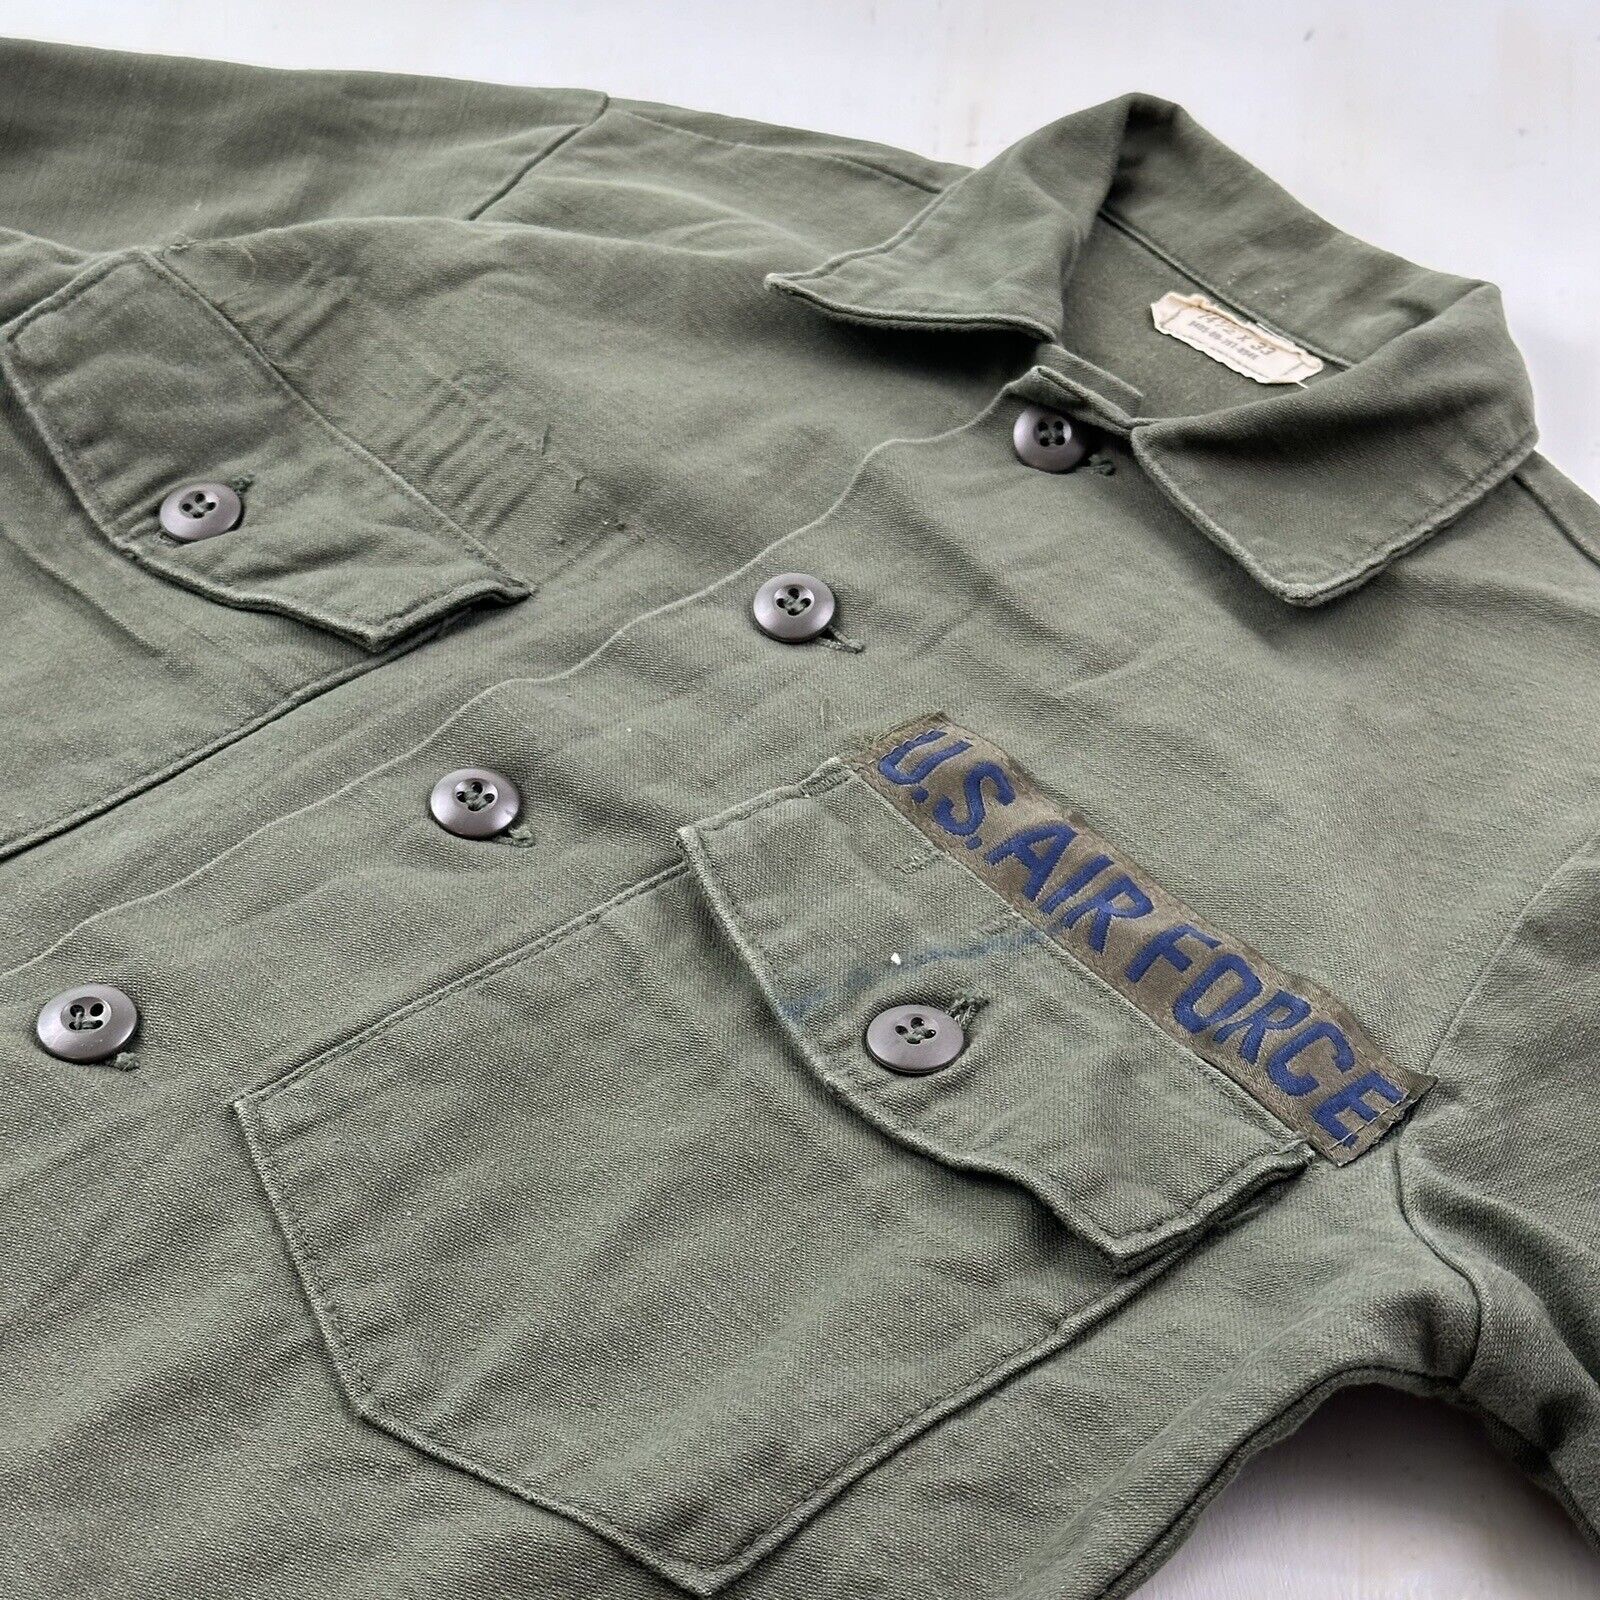 VTG Sateen Shirt Men 14.5 33 Small Air Force OG-107 Military Utility Cotton ‘70s